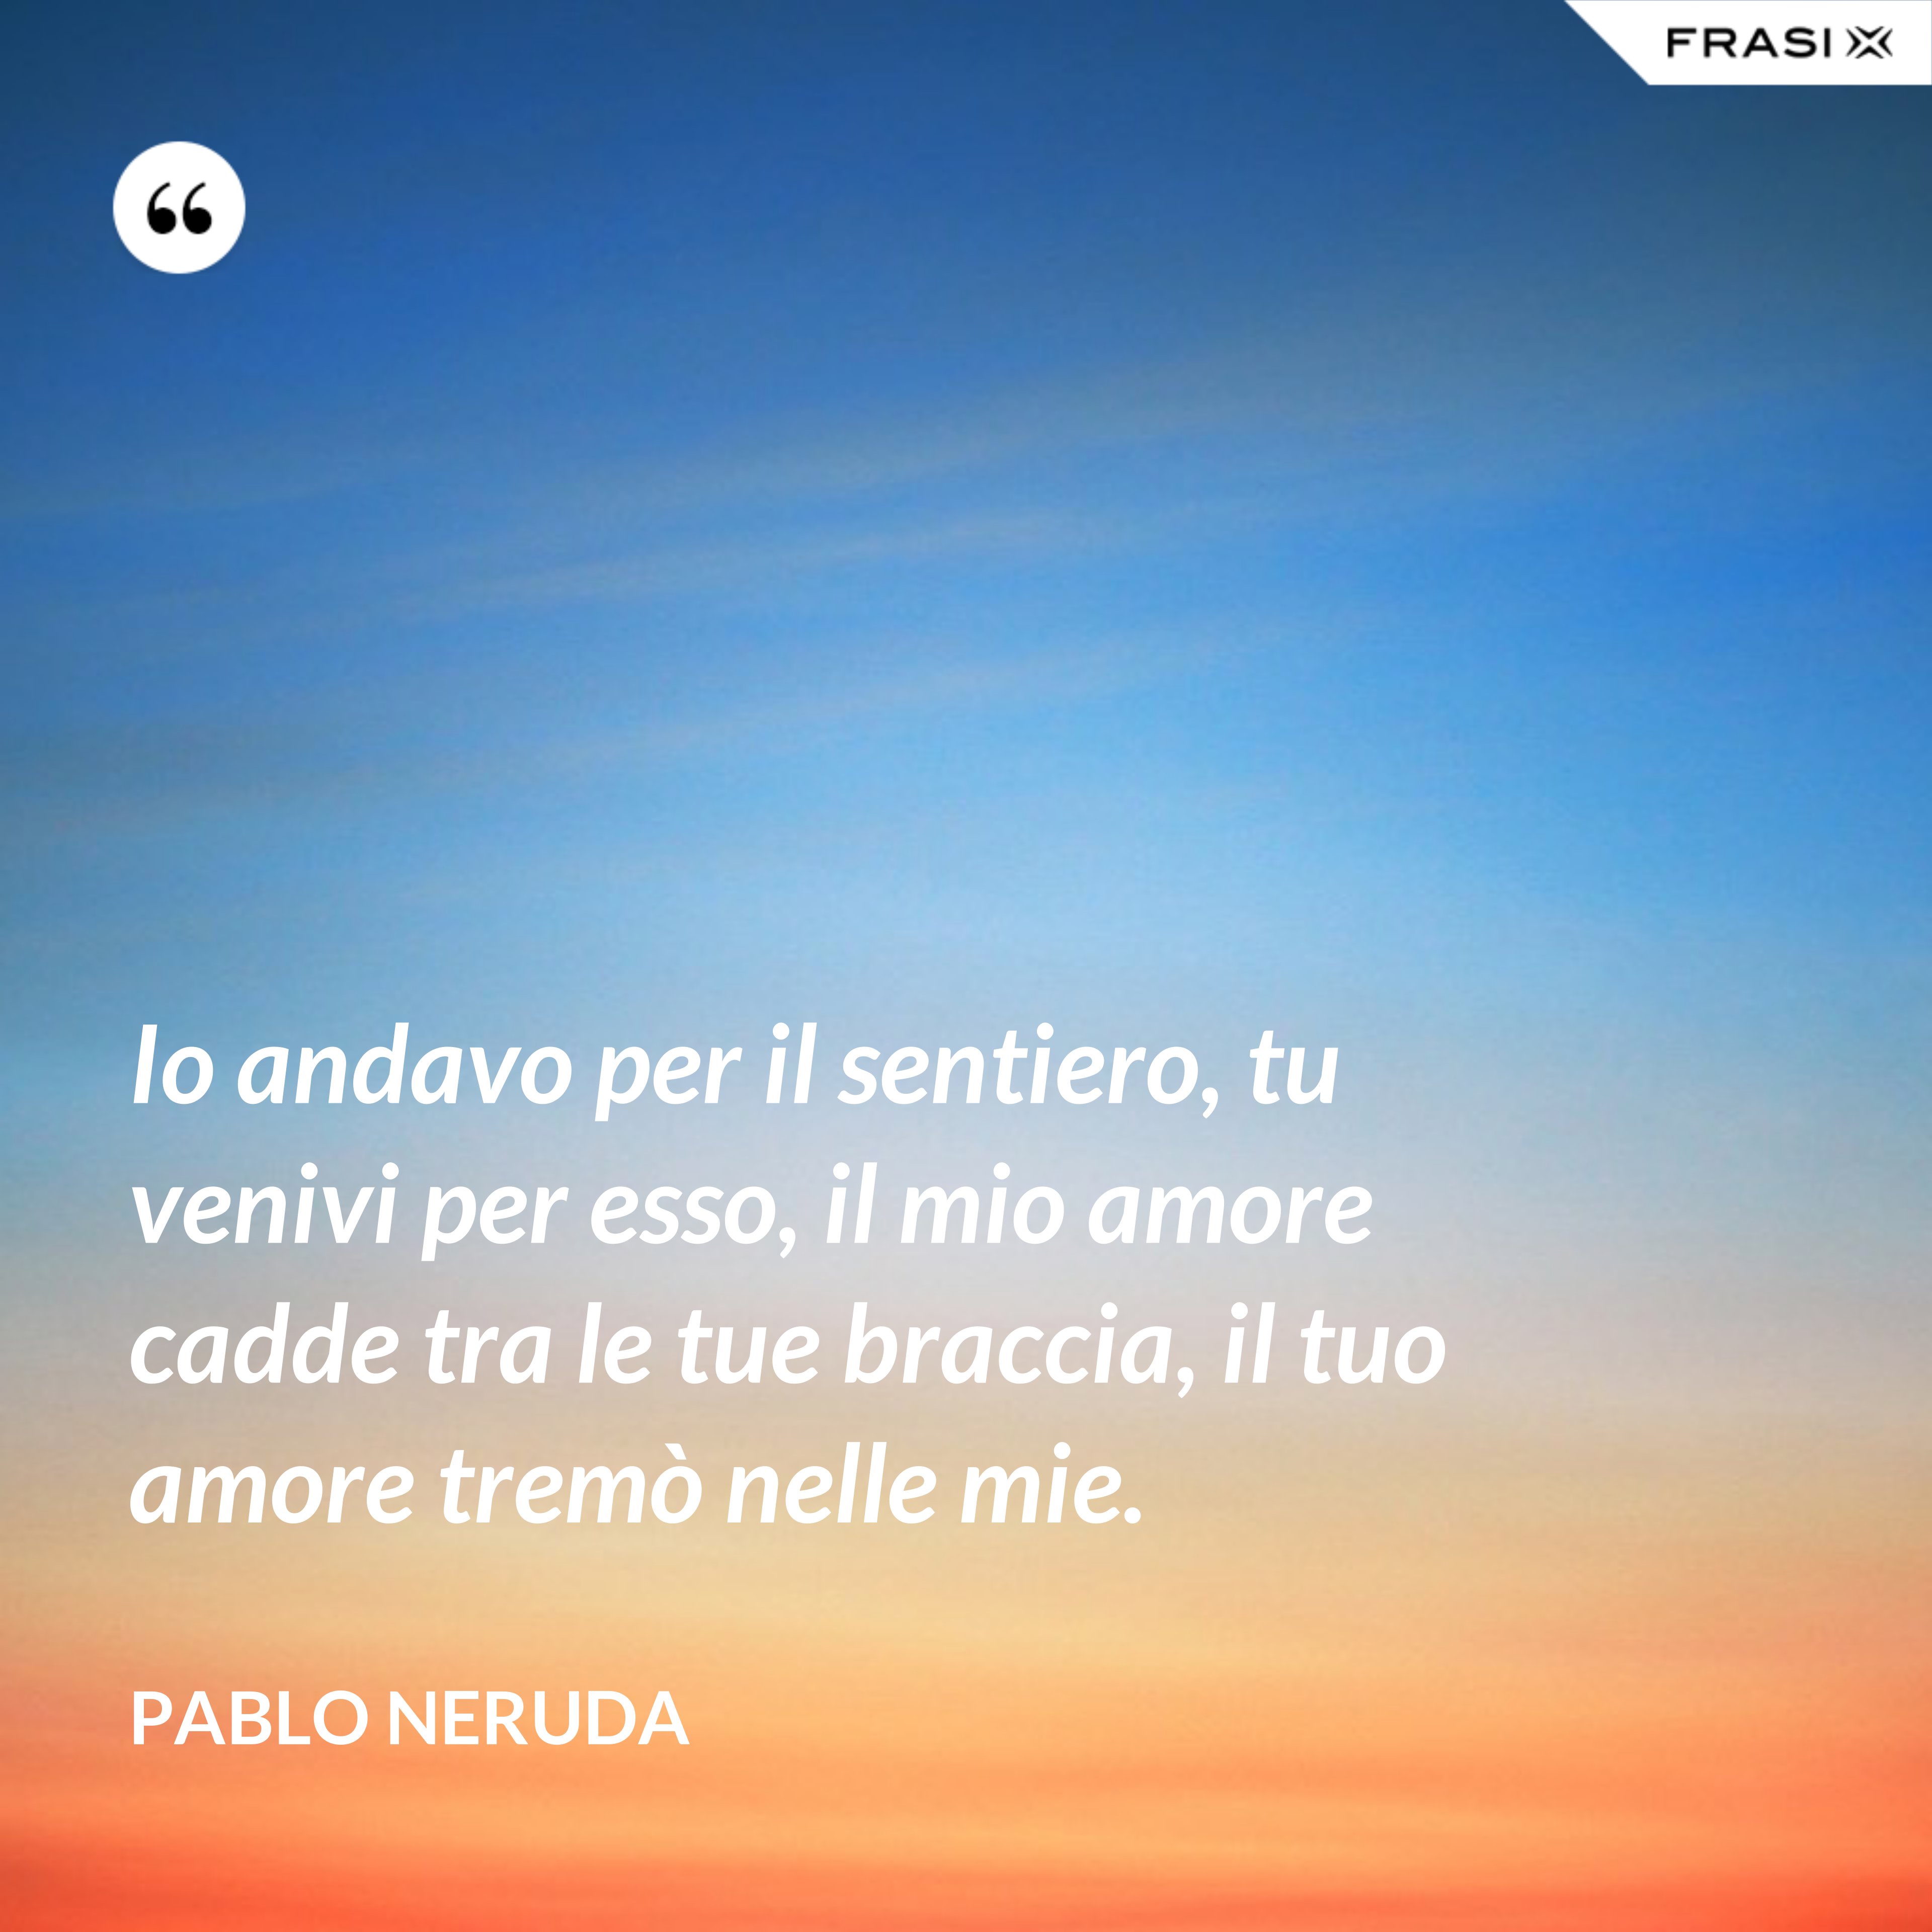 Io andavo per il sentiero, tu venivi per esso, il mio amore cadde tra le tue braccia, il tuo amore tremò nelle mie. - Pablo Neruda